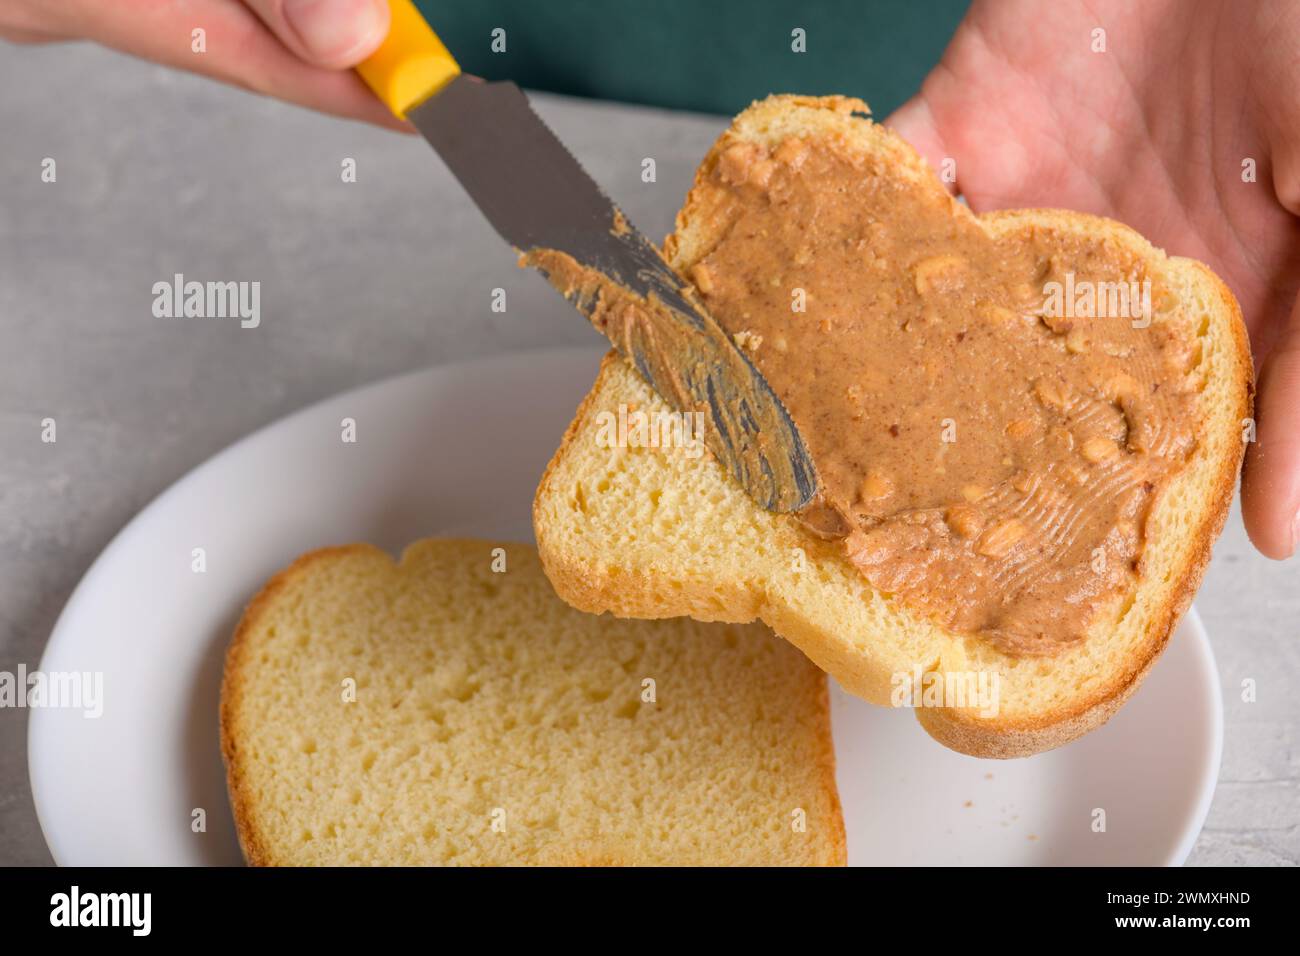 Gros plan de pain blanc toast avec étalement de beurre d'arachide et couteau, les mains de la femme étalent le beurre d'arachide, gros plan, snack typique, style de vie, dom Banque D'Images